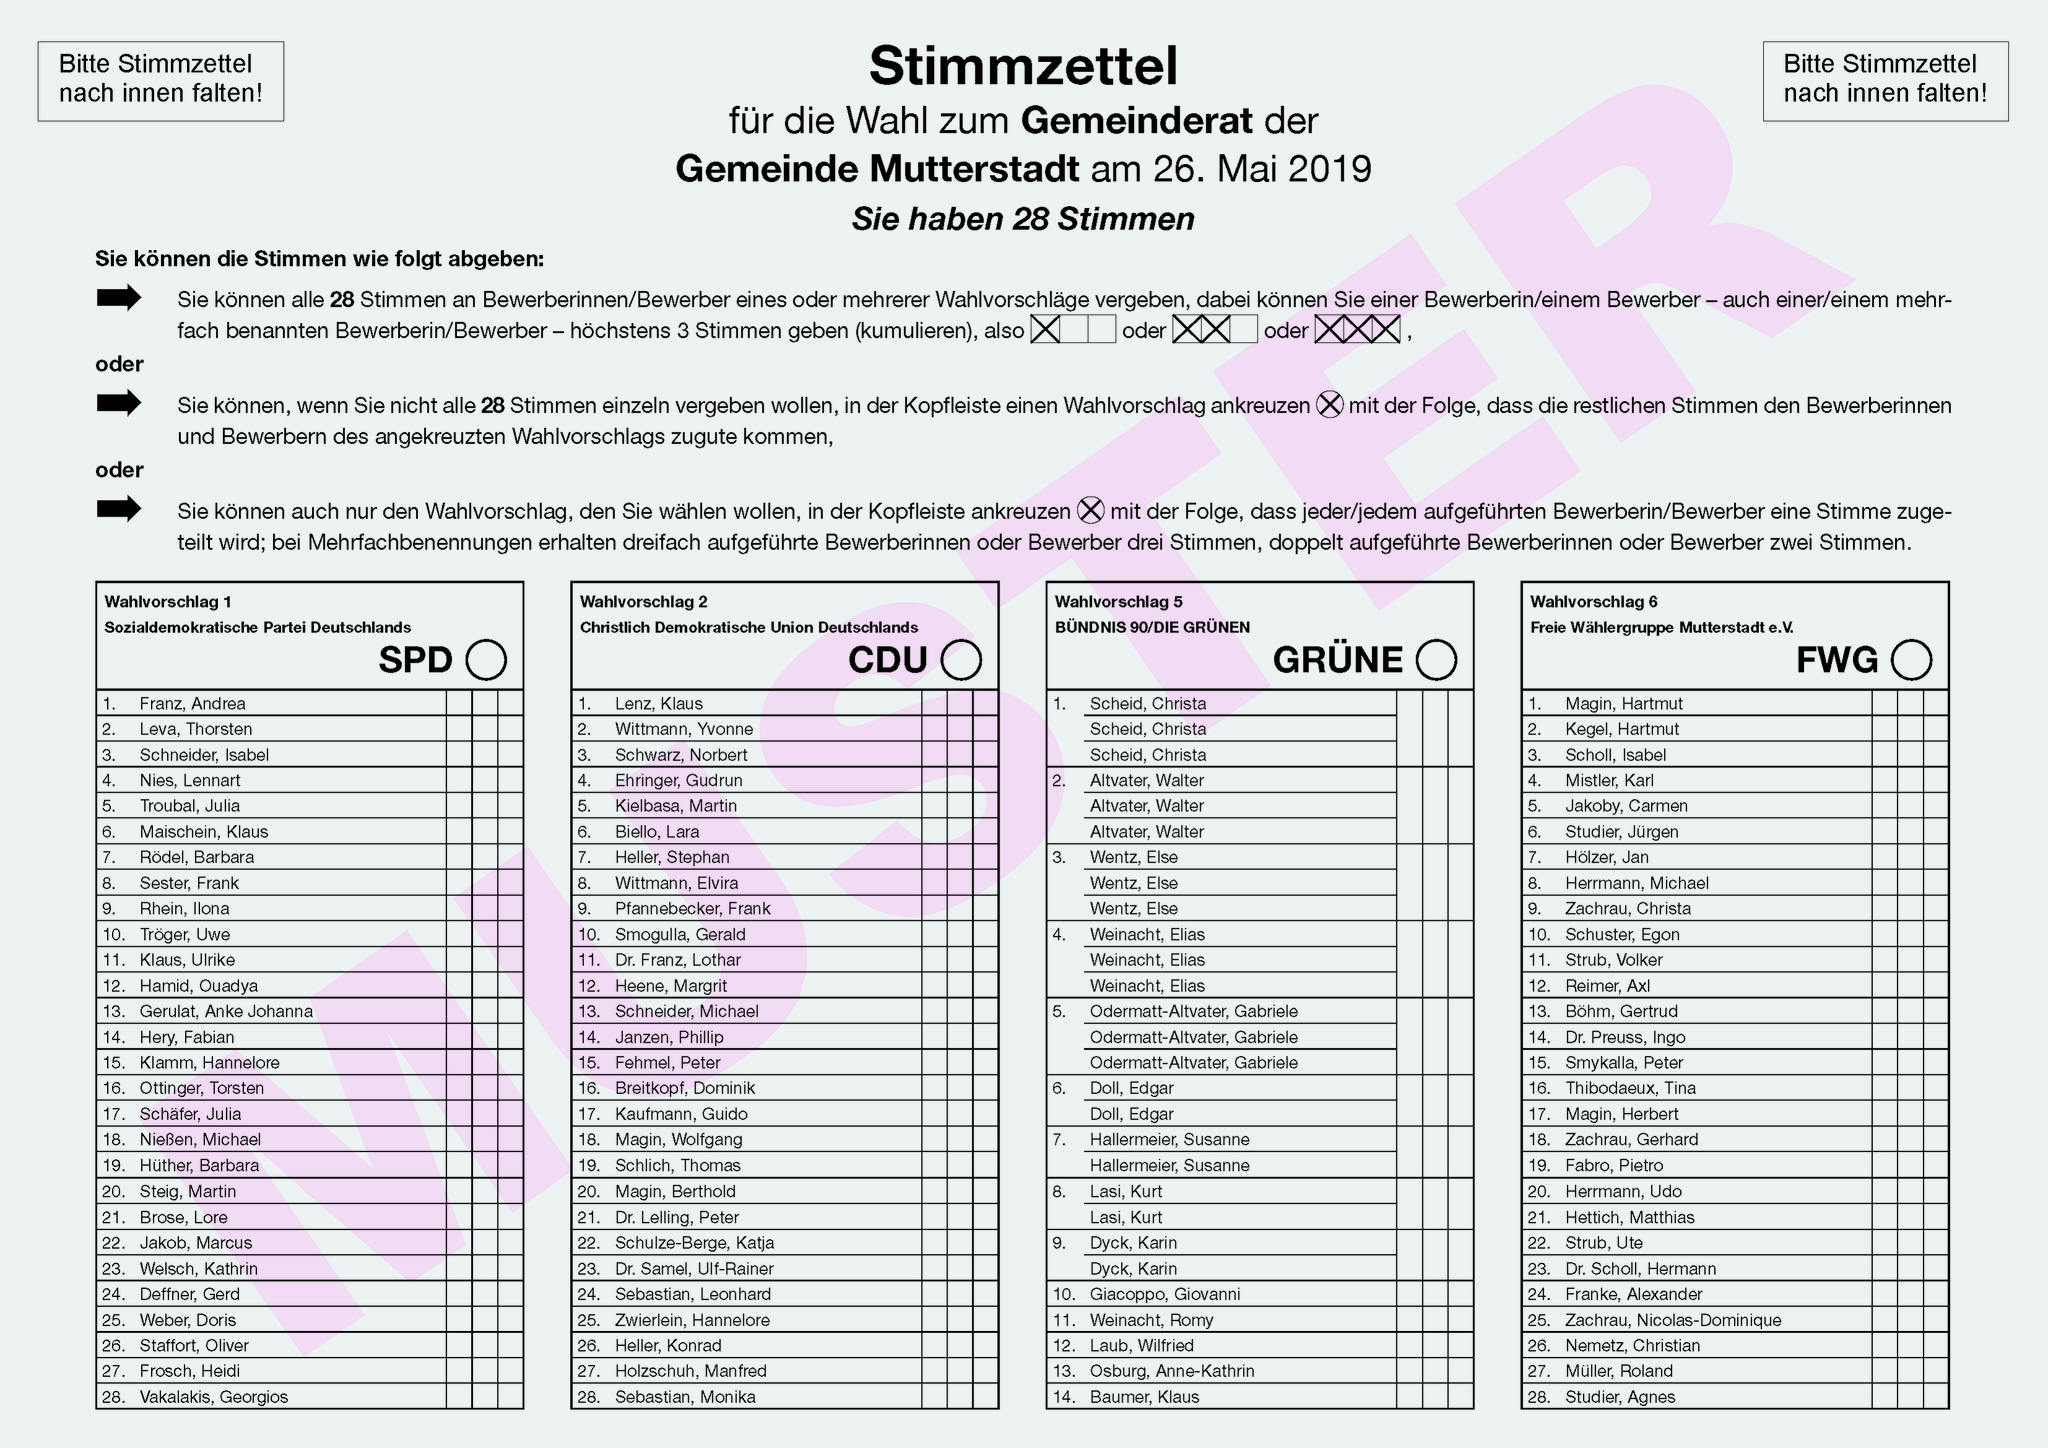 Kommunalwahlen 2019 Information Zum Stimmzettelmuster Fur Die Mutterstadter Gemeinderatswahl Mutterstadt